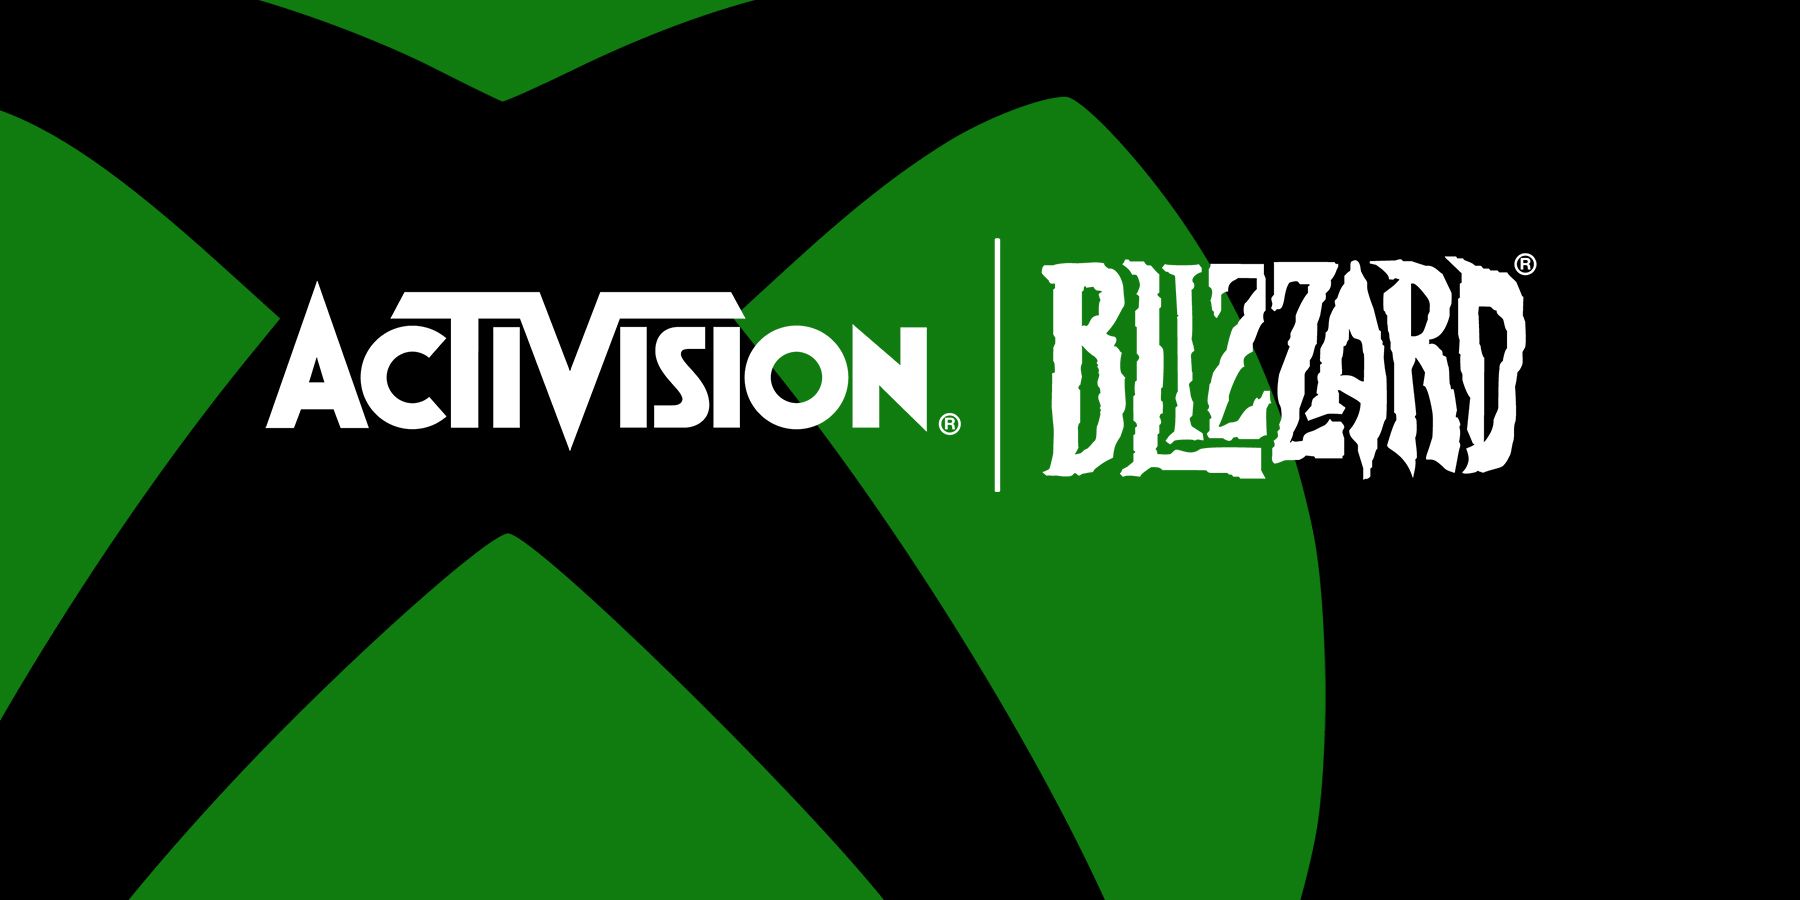 Logotipos do Xbox e da Activision Blizzard